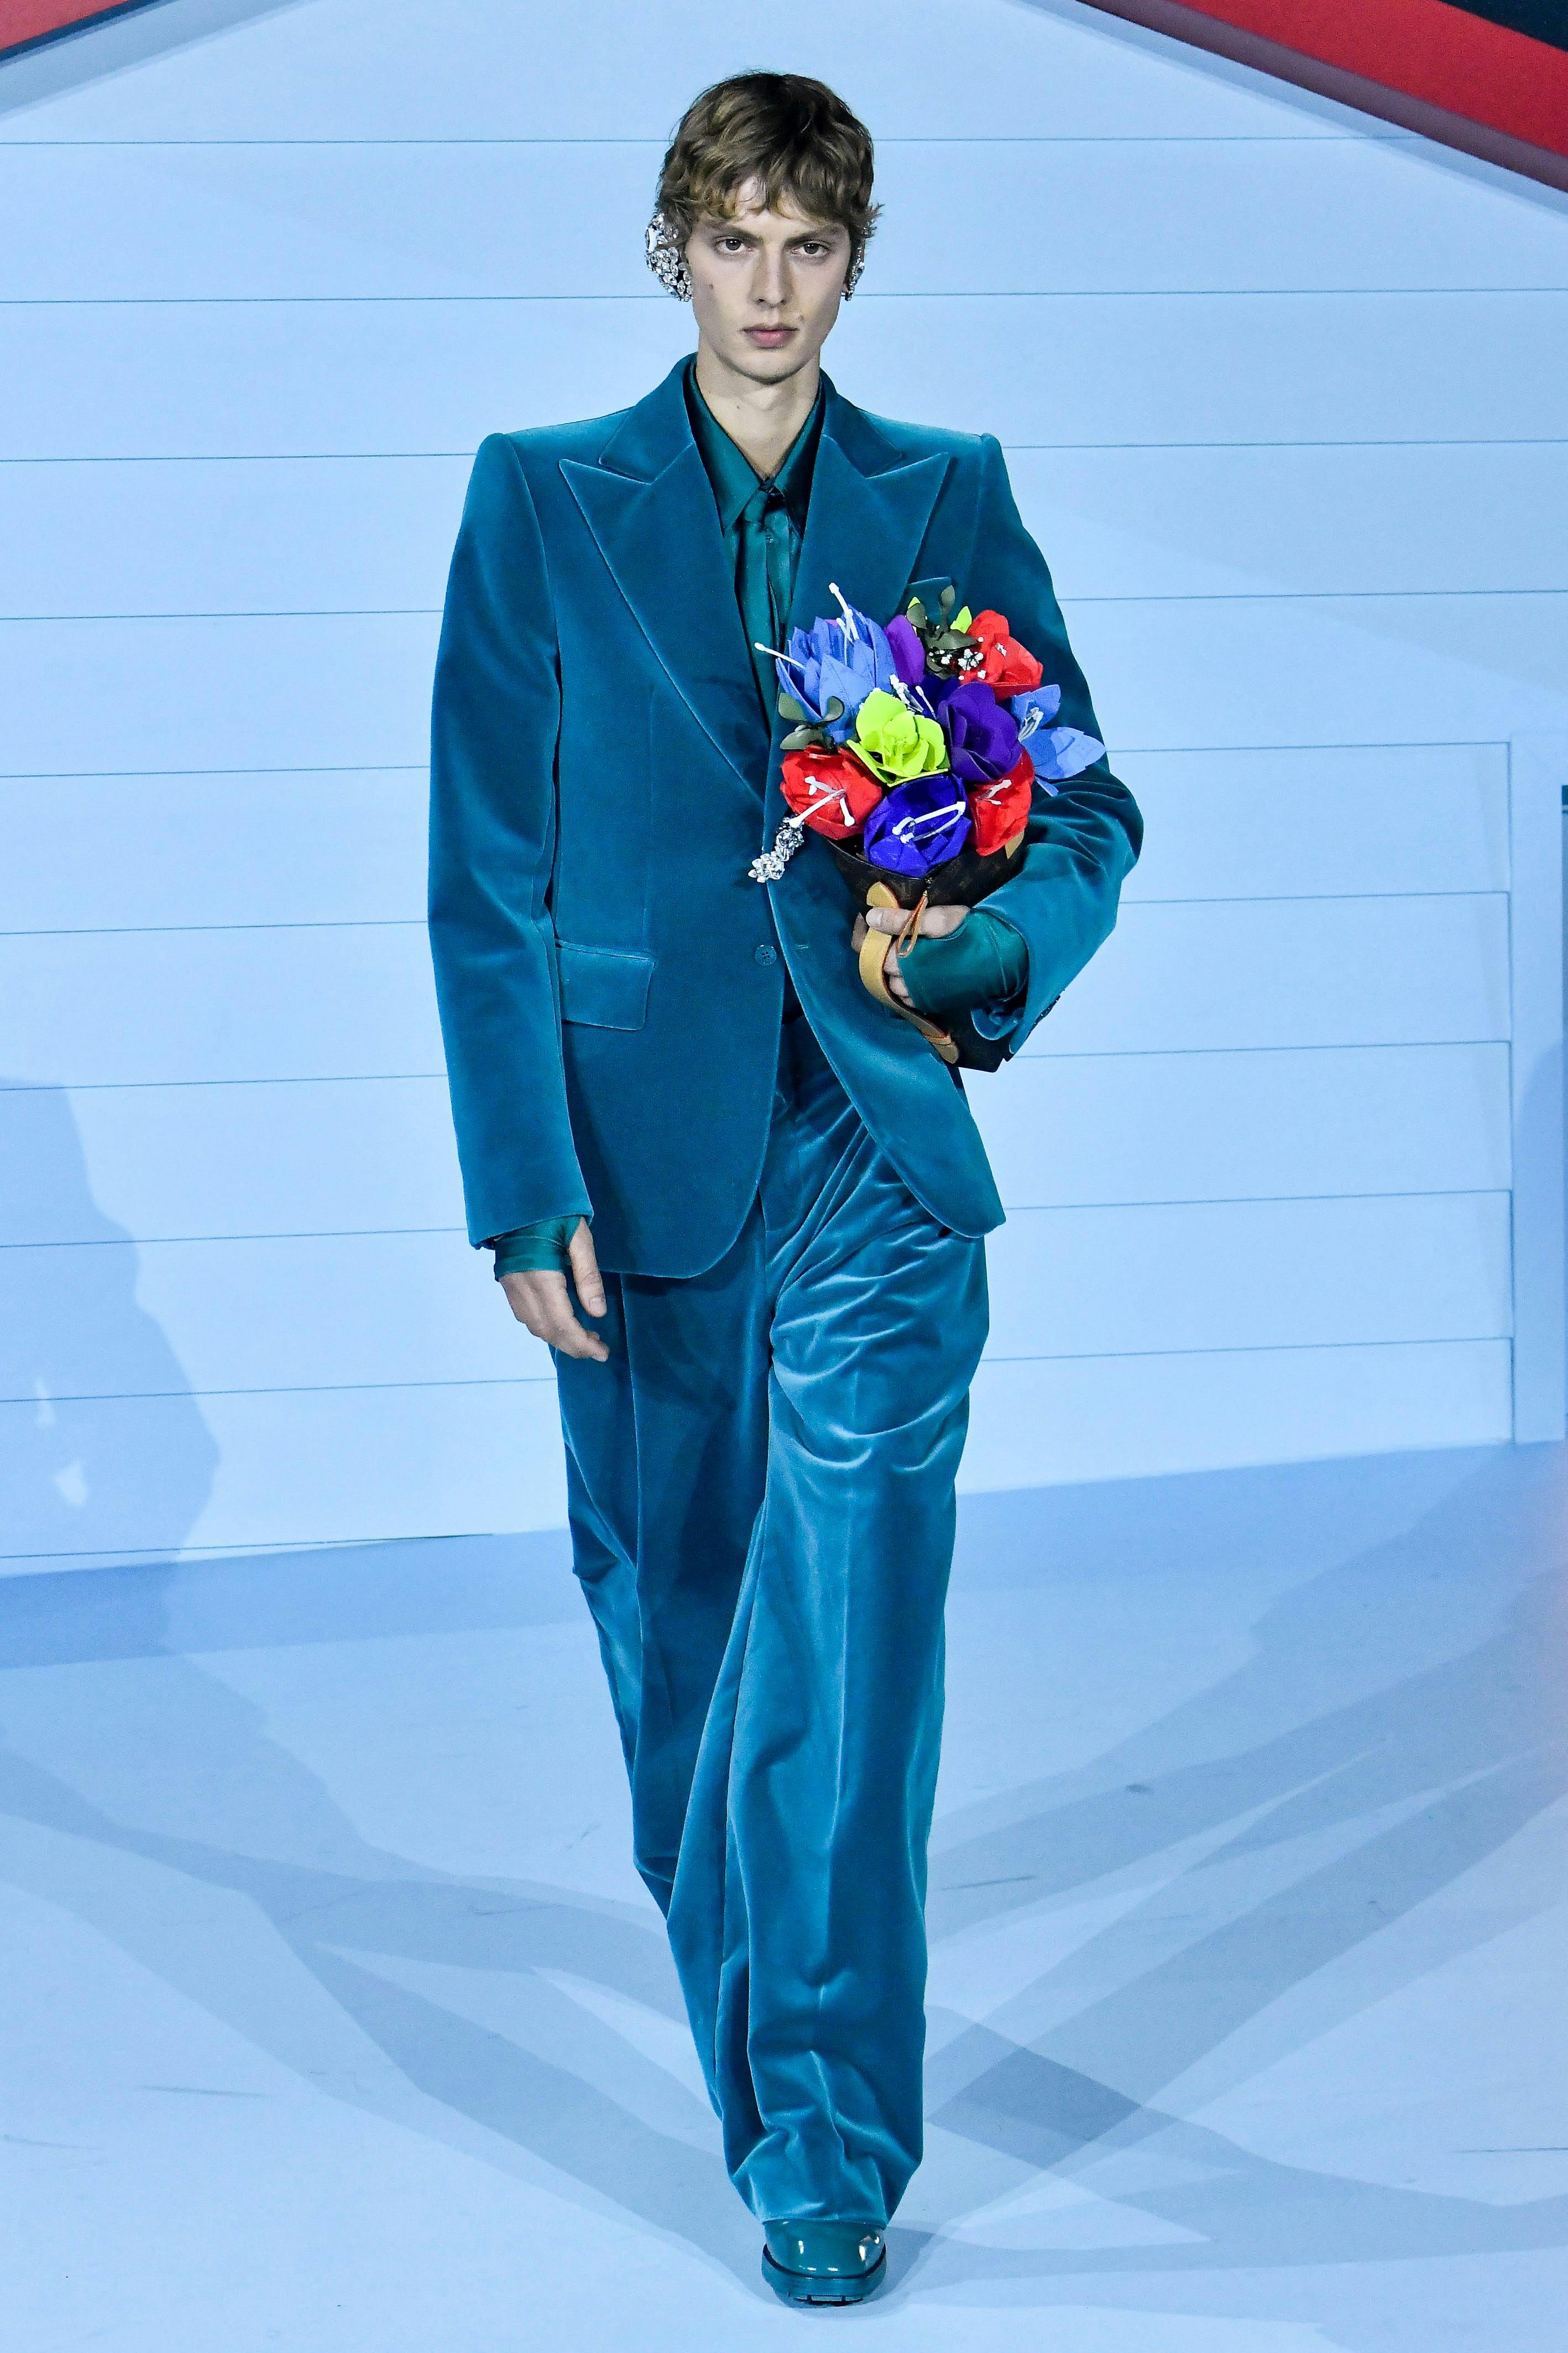 paris flower arrangement flower flower bouquet suit formal wear man adult male person fashion